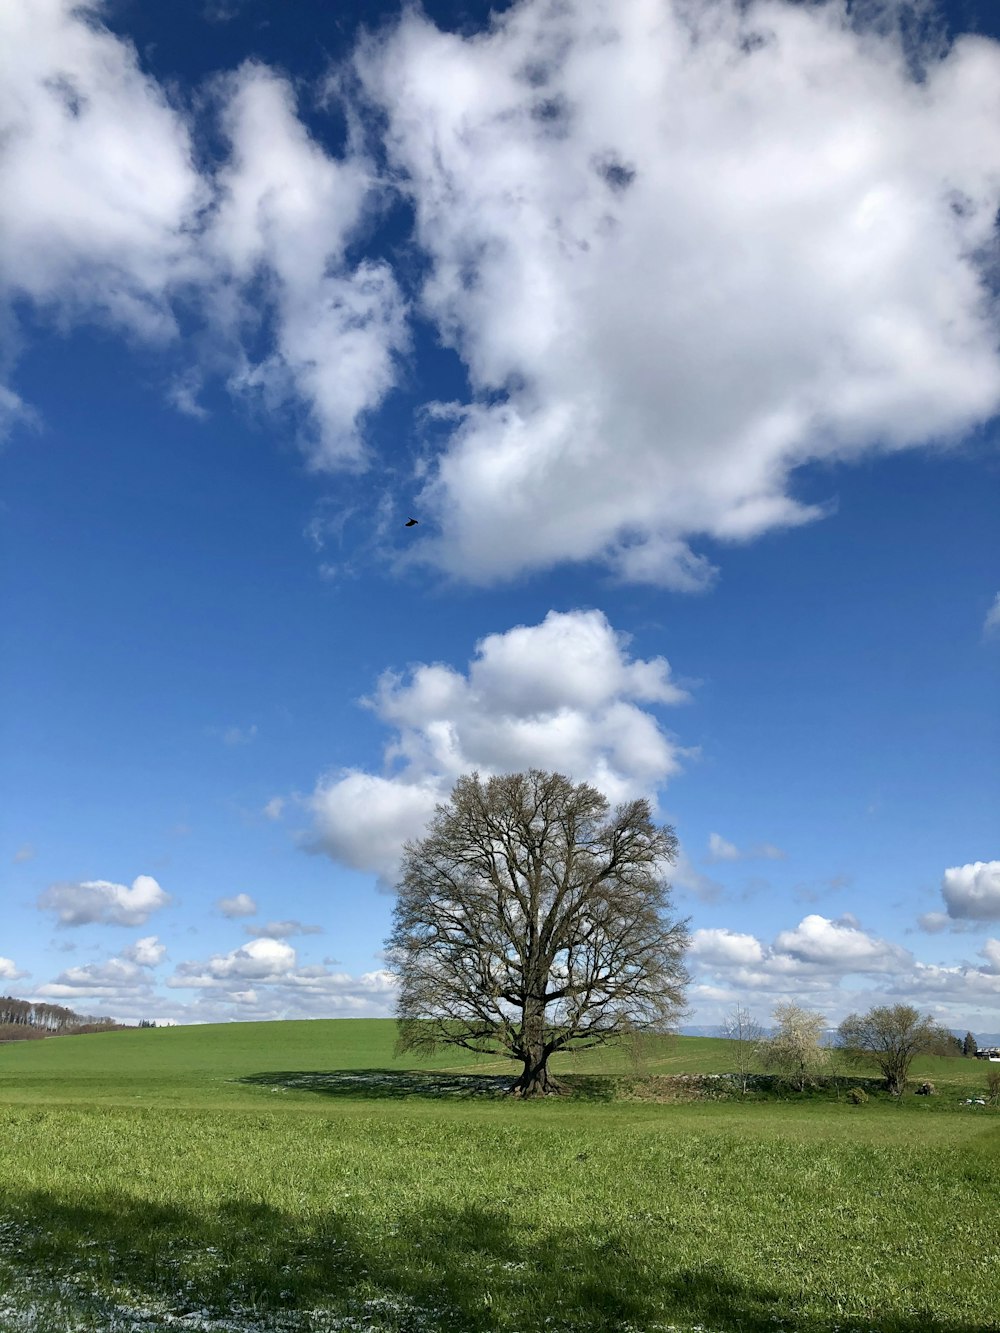 albero senza foglie sul campo di erba verde sotto il cielo nuvoloso blu e bianco durante il giorno